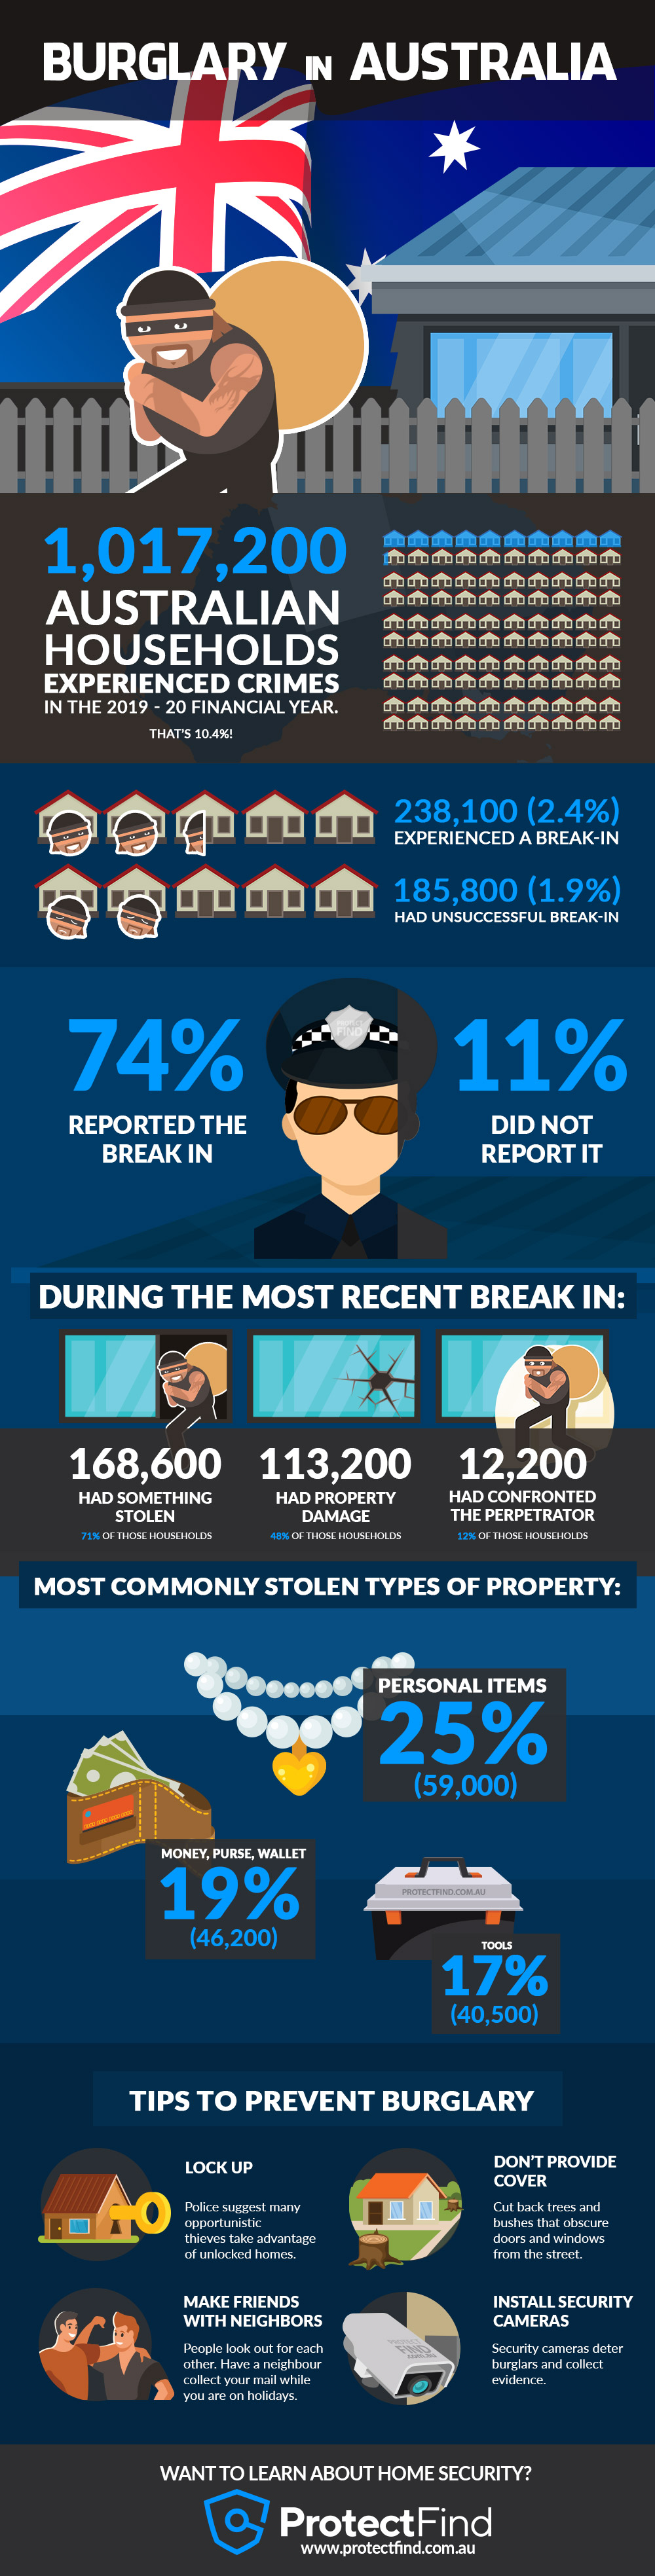 Infographic on Burglary in Australian Households